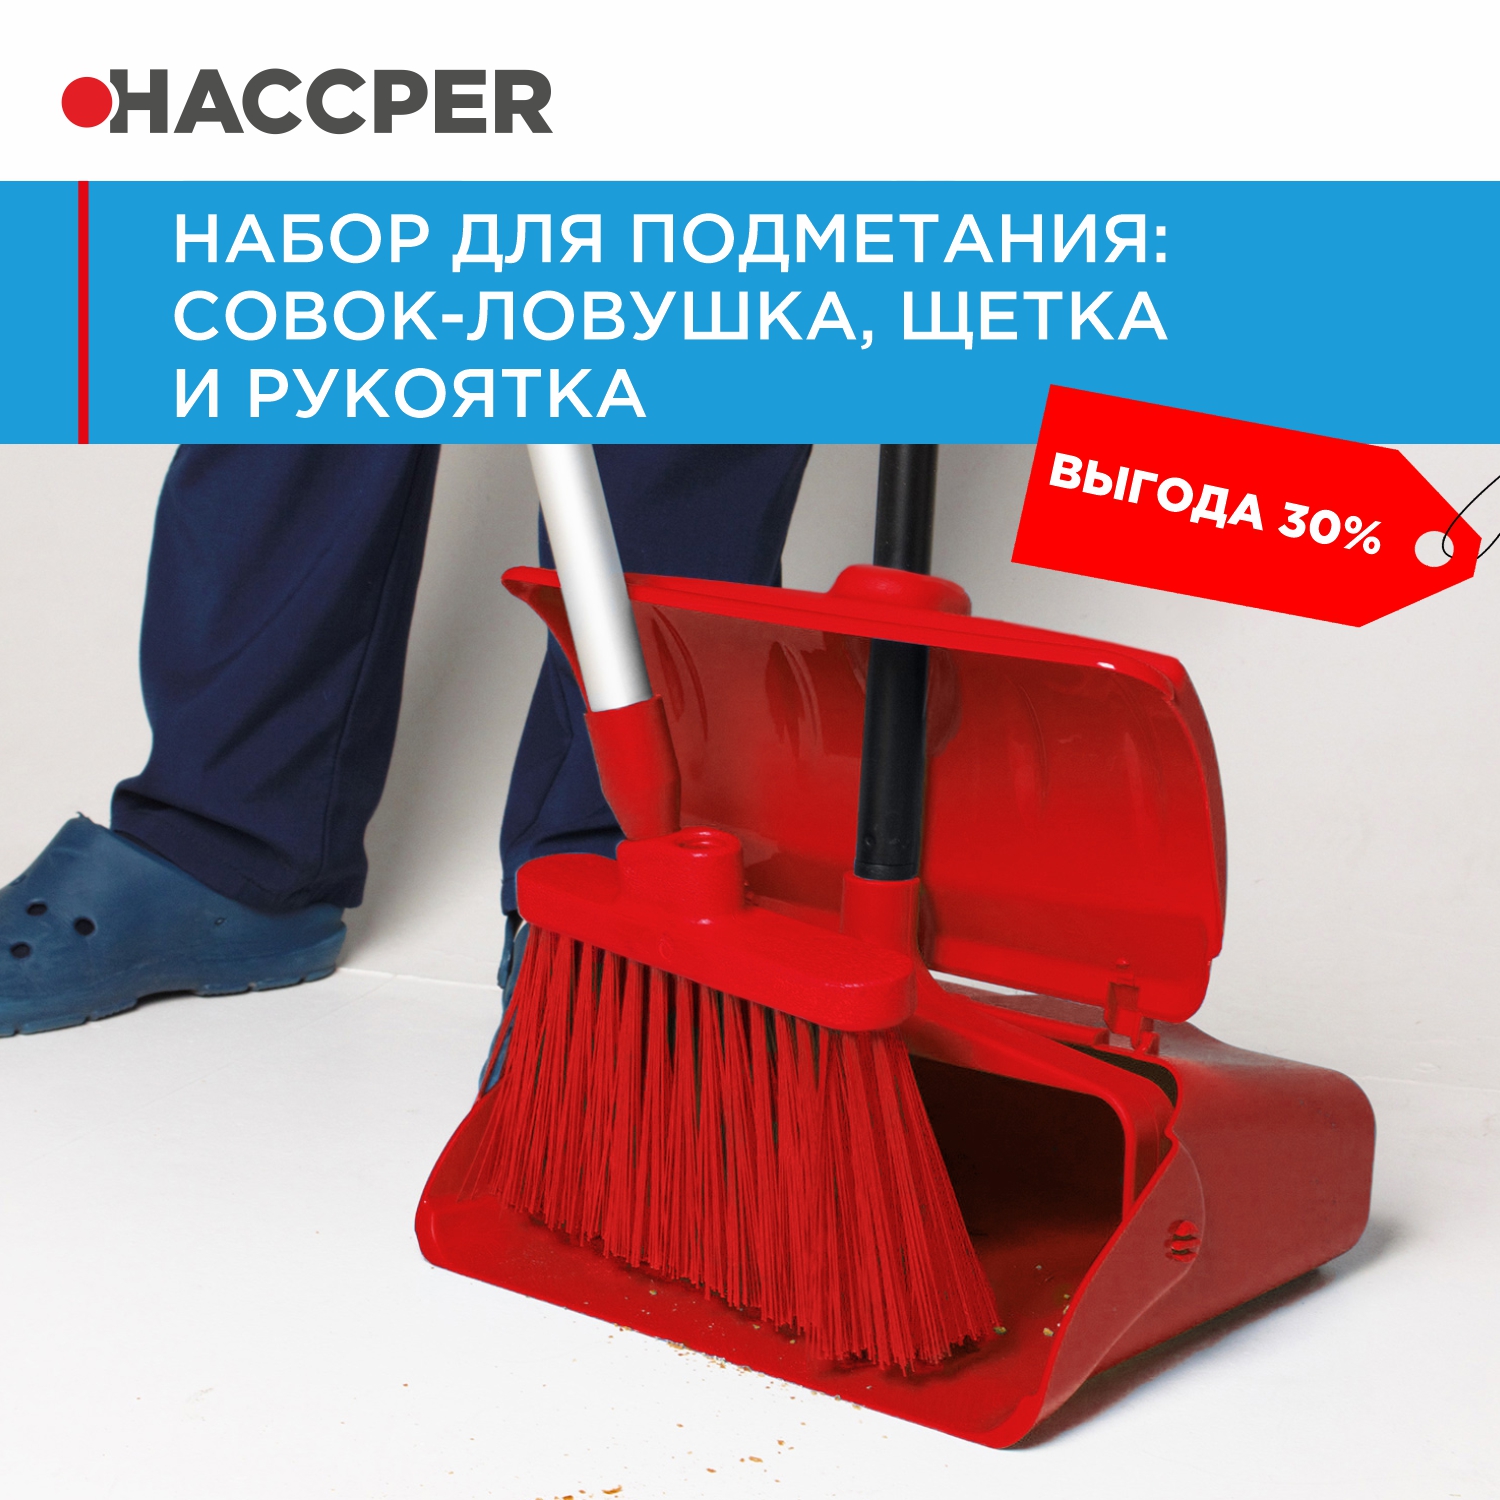 Набор для подметания HACCPER совок-ловушка, щетка и рукоятка, красный